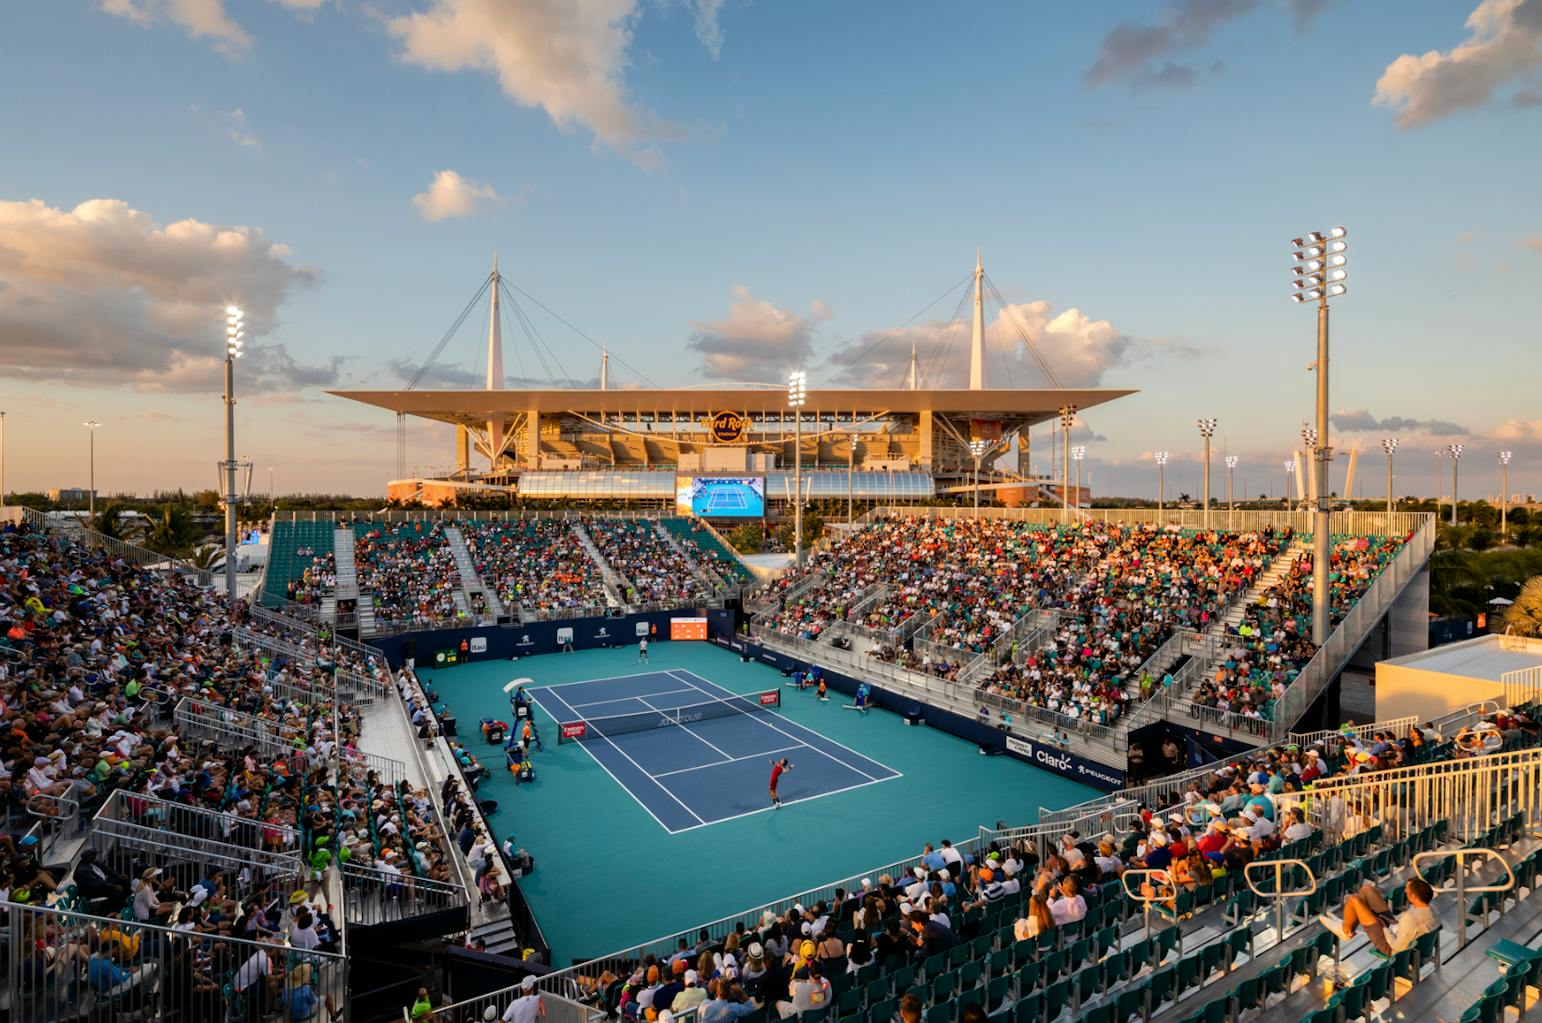 Теннис стадион. Теннисный корт Майами. Хард рок Стэдиум Майами. Miami open 2022. Стадион Хард рок Майами.